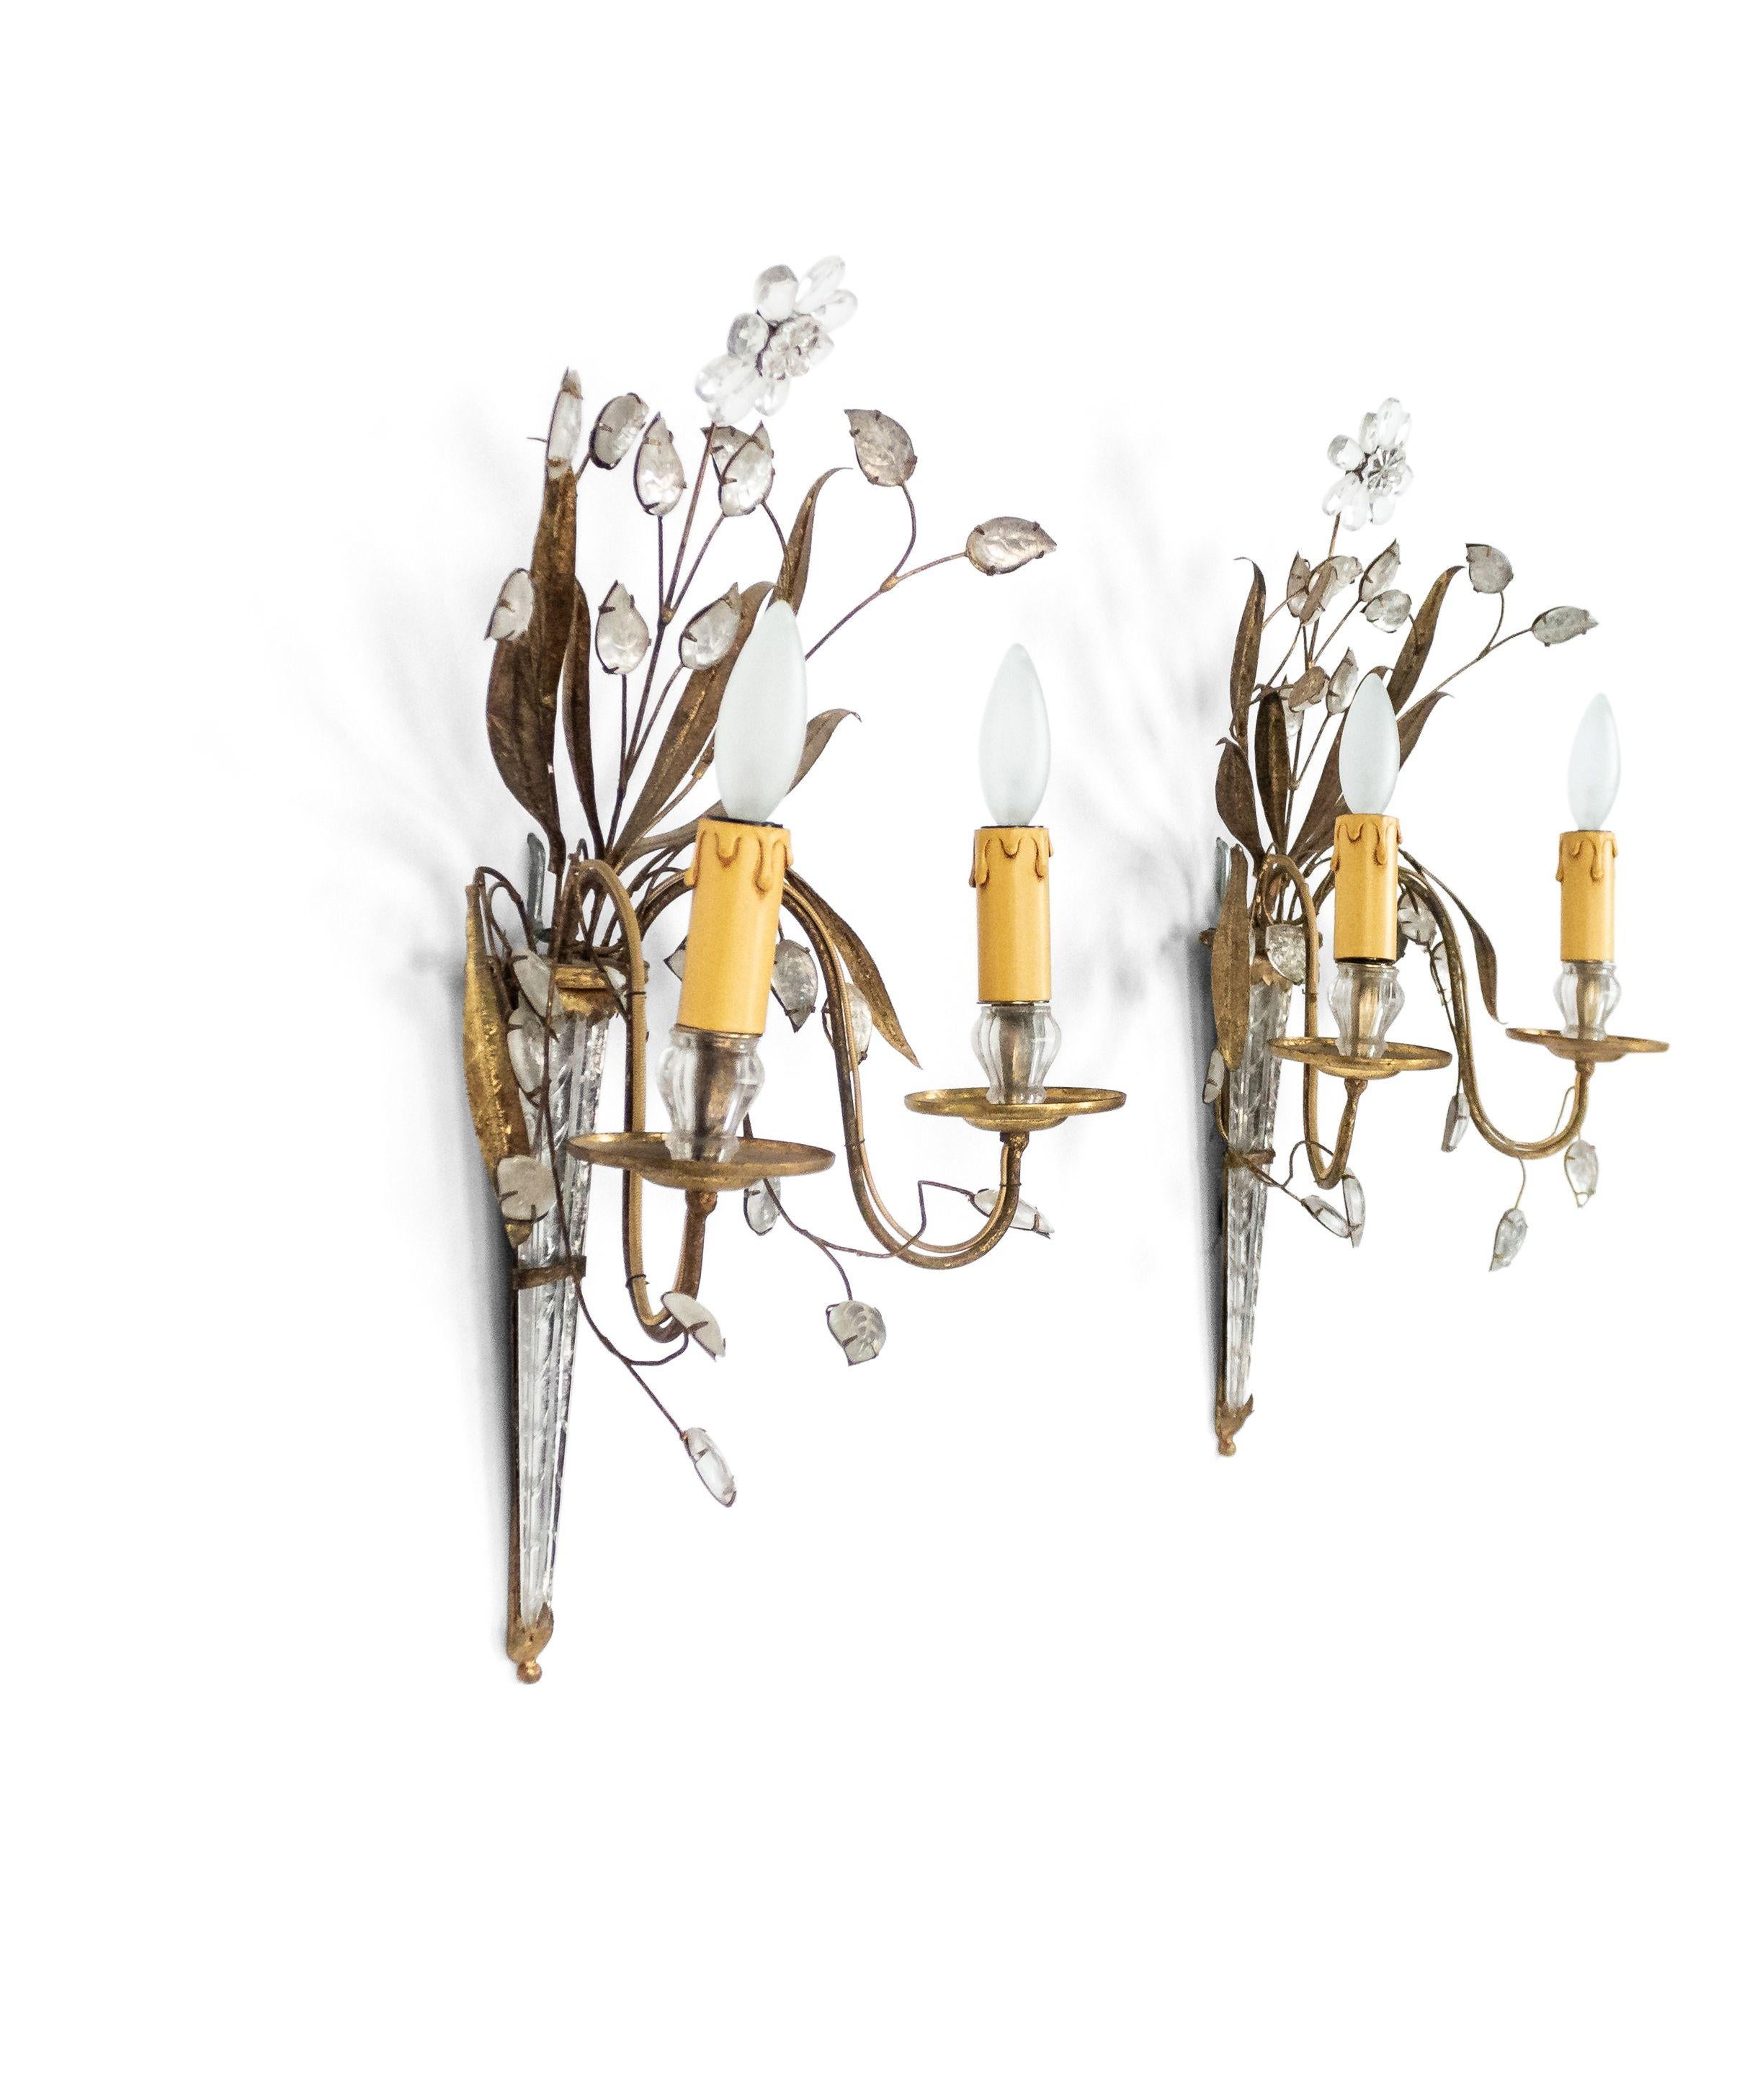 4 französische 2-Arm-Wandleuchter aus Glas und vergoldetem Metall aus der Mitte des Jahrhunderts (1940) mit blühenden Zweigen, die von einer sich verjüngenden Rückplatte ausgehen. (att: BAGUES) (PREIS PRO STÜCK)
